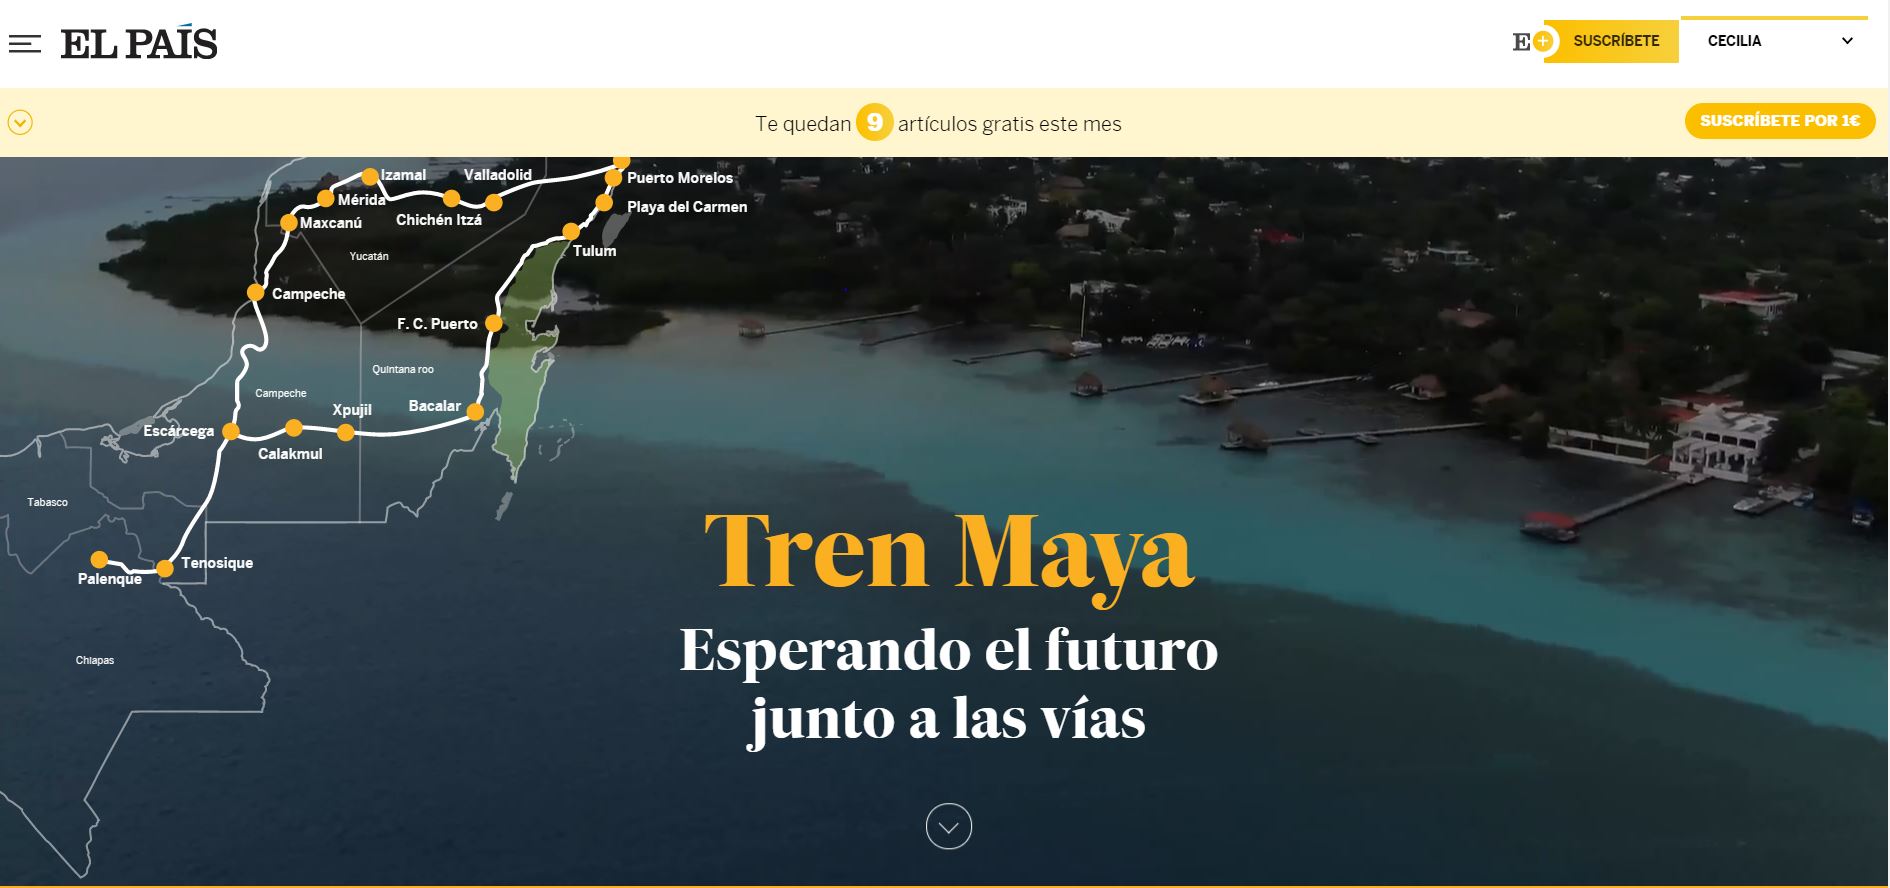 Tren Maya: Esperando el futuro junto a las vías